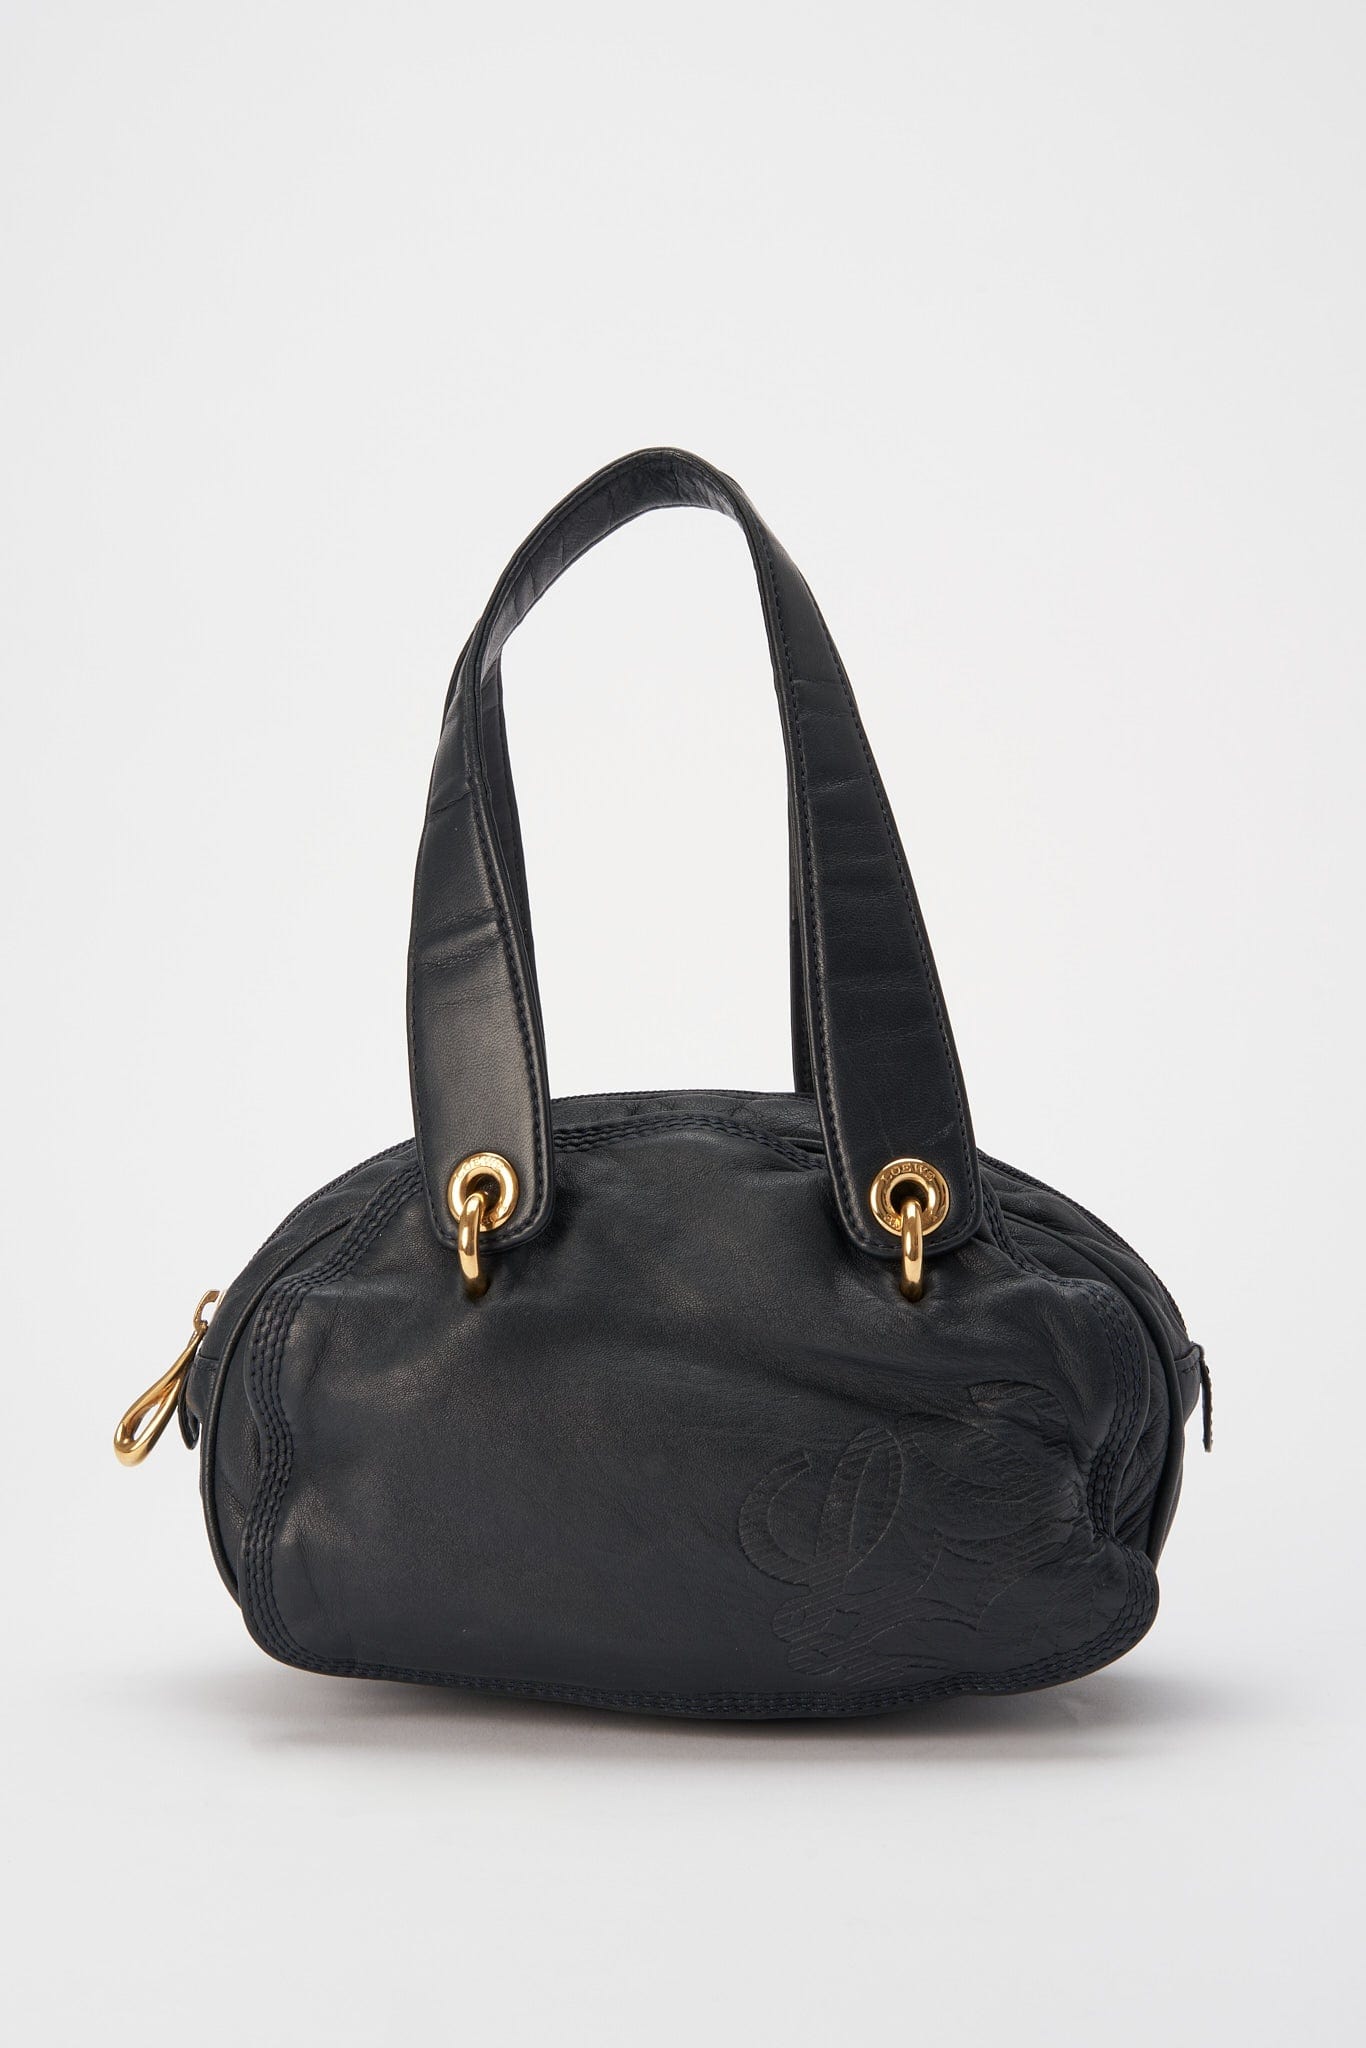 Vintage Loewe Bag